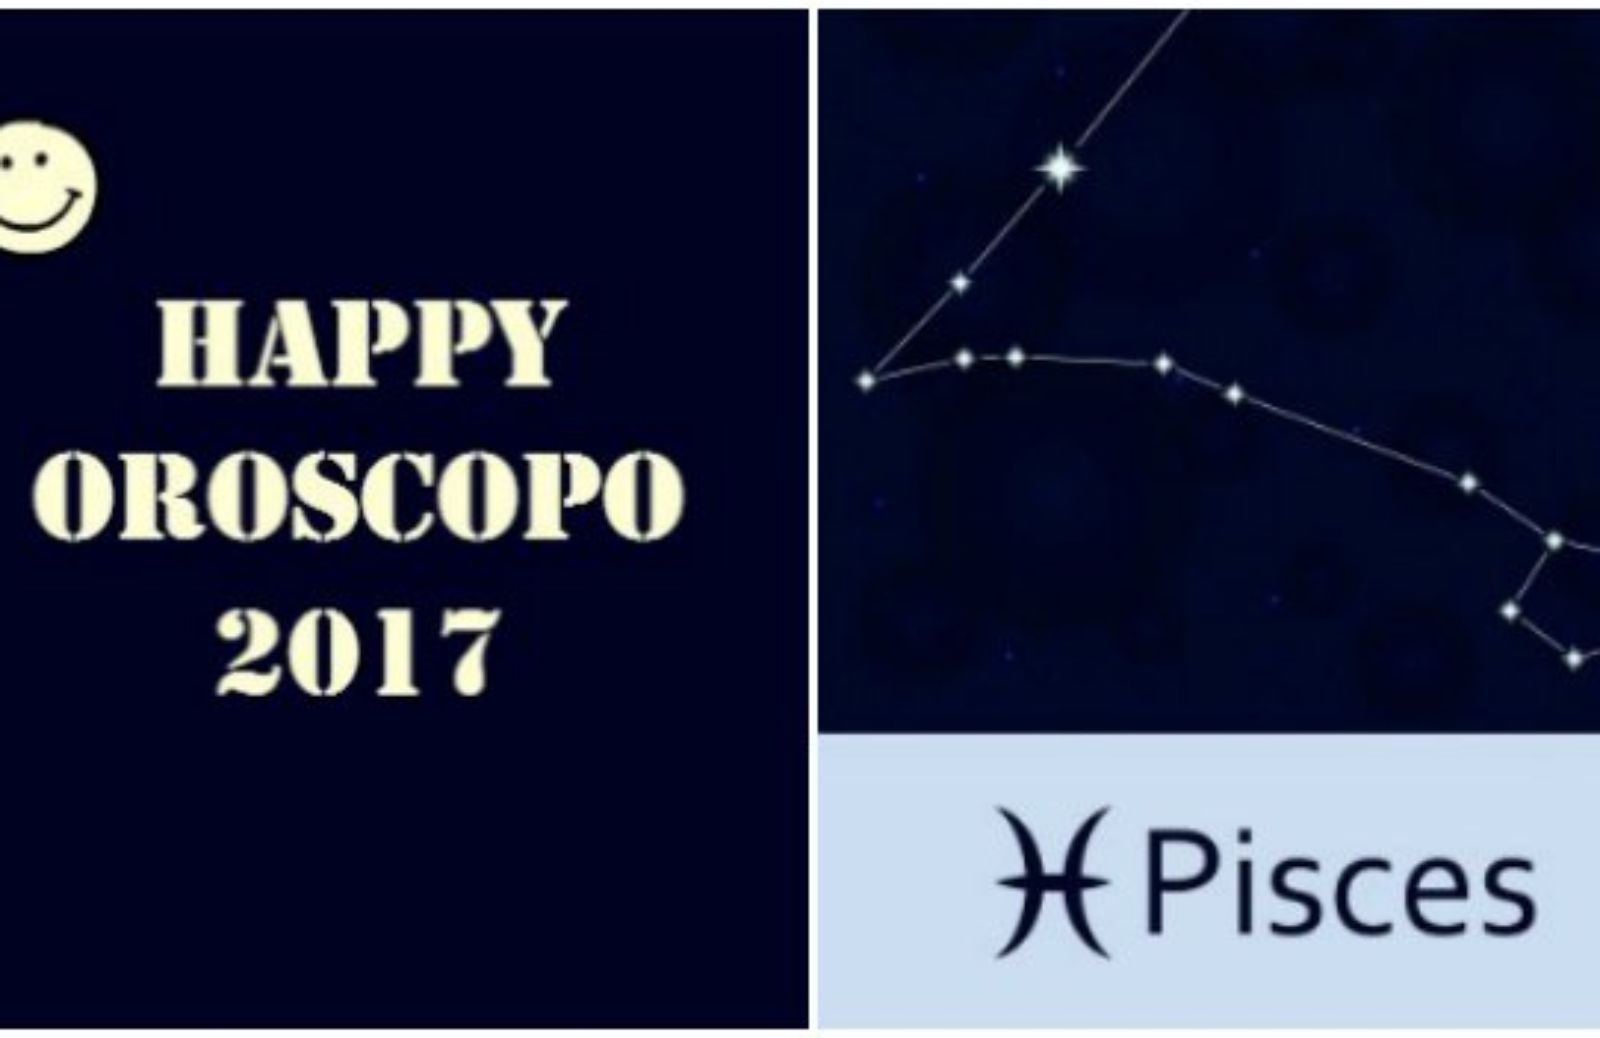 Happy Oroscopo 2017: il segno dei Pesci